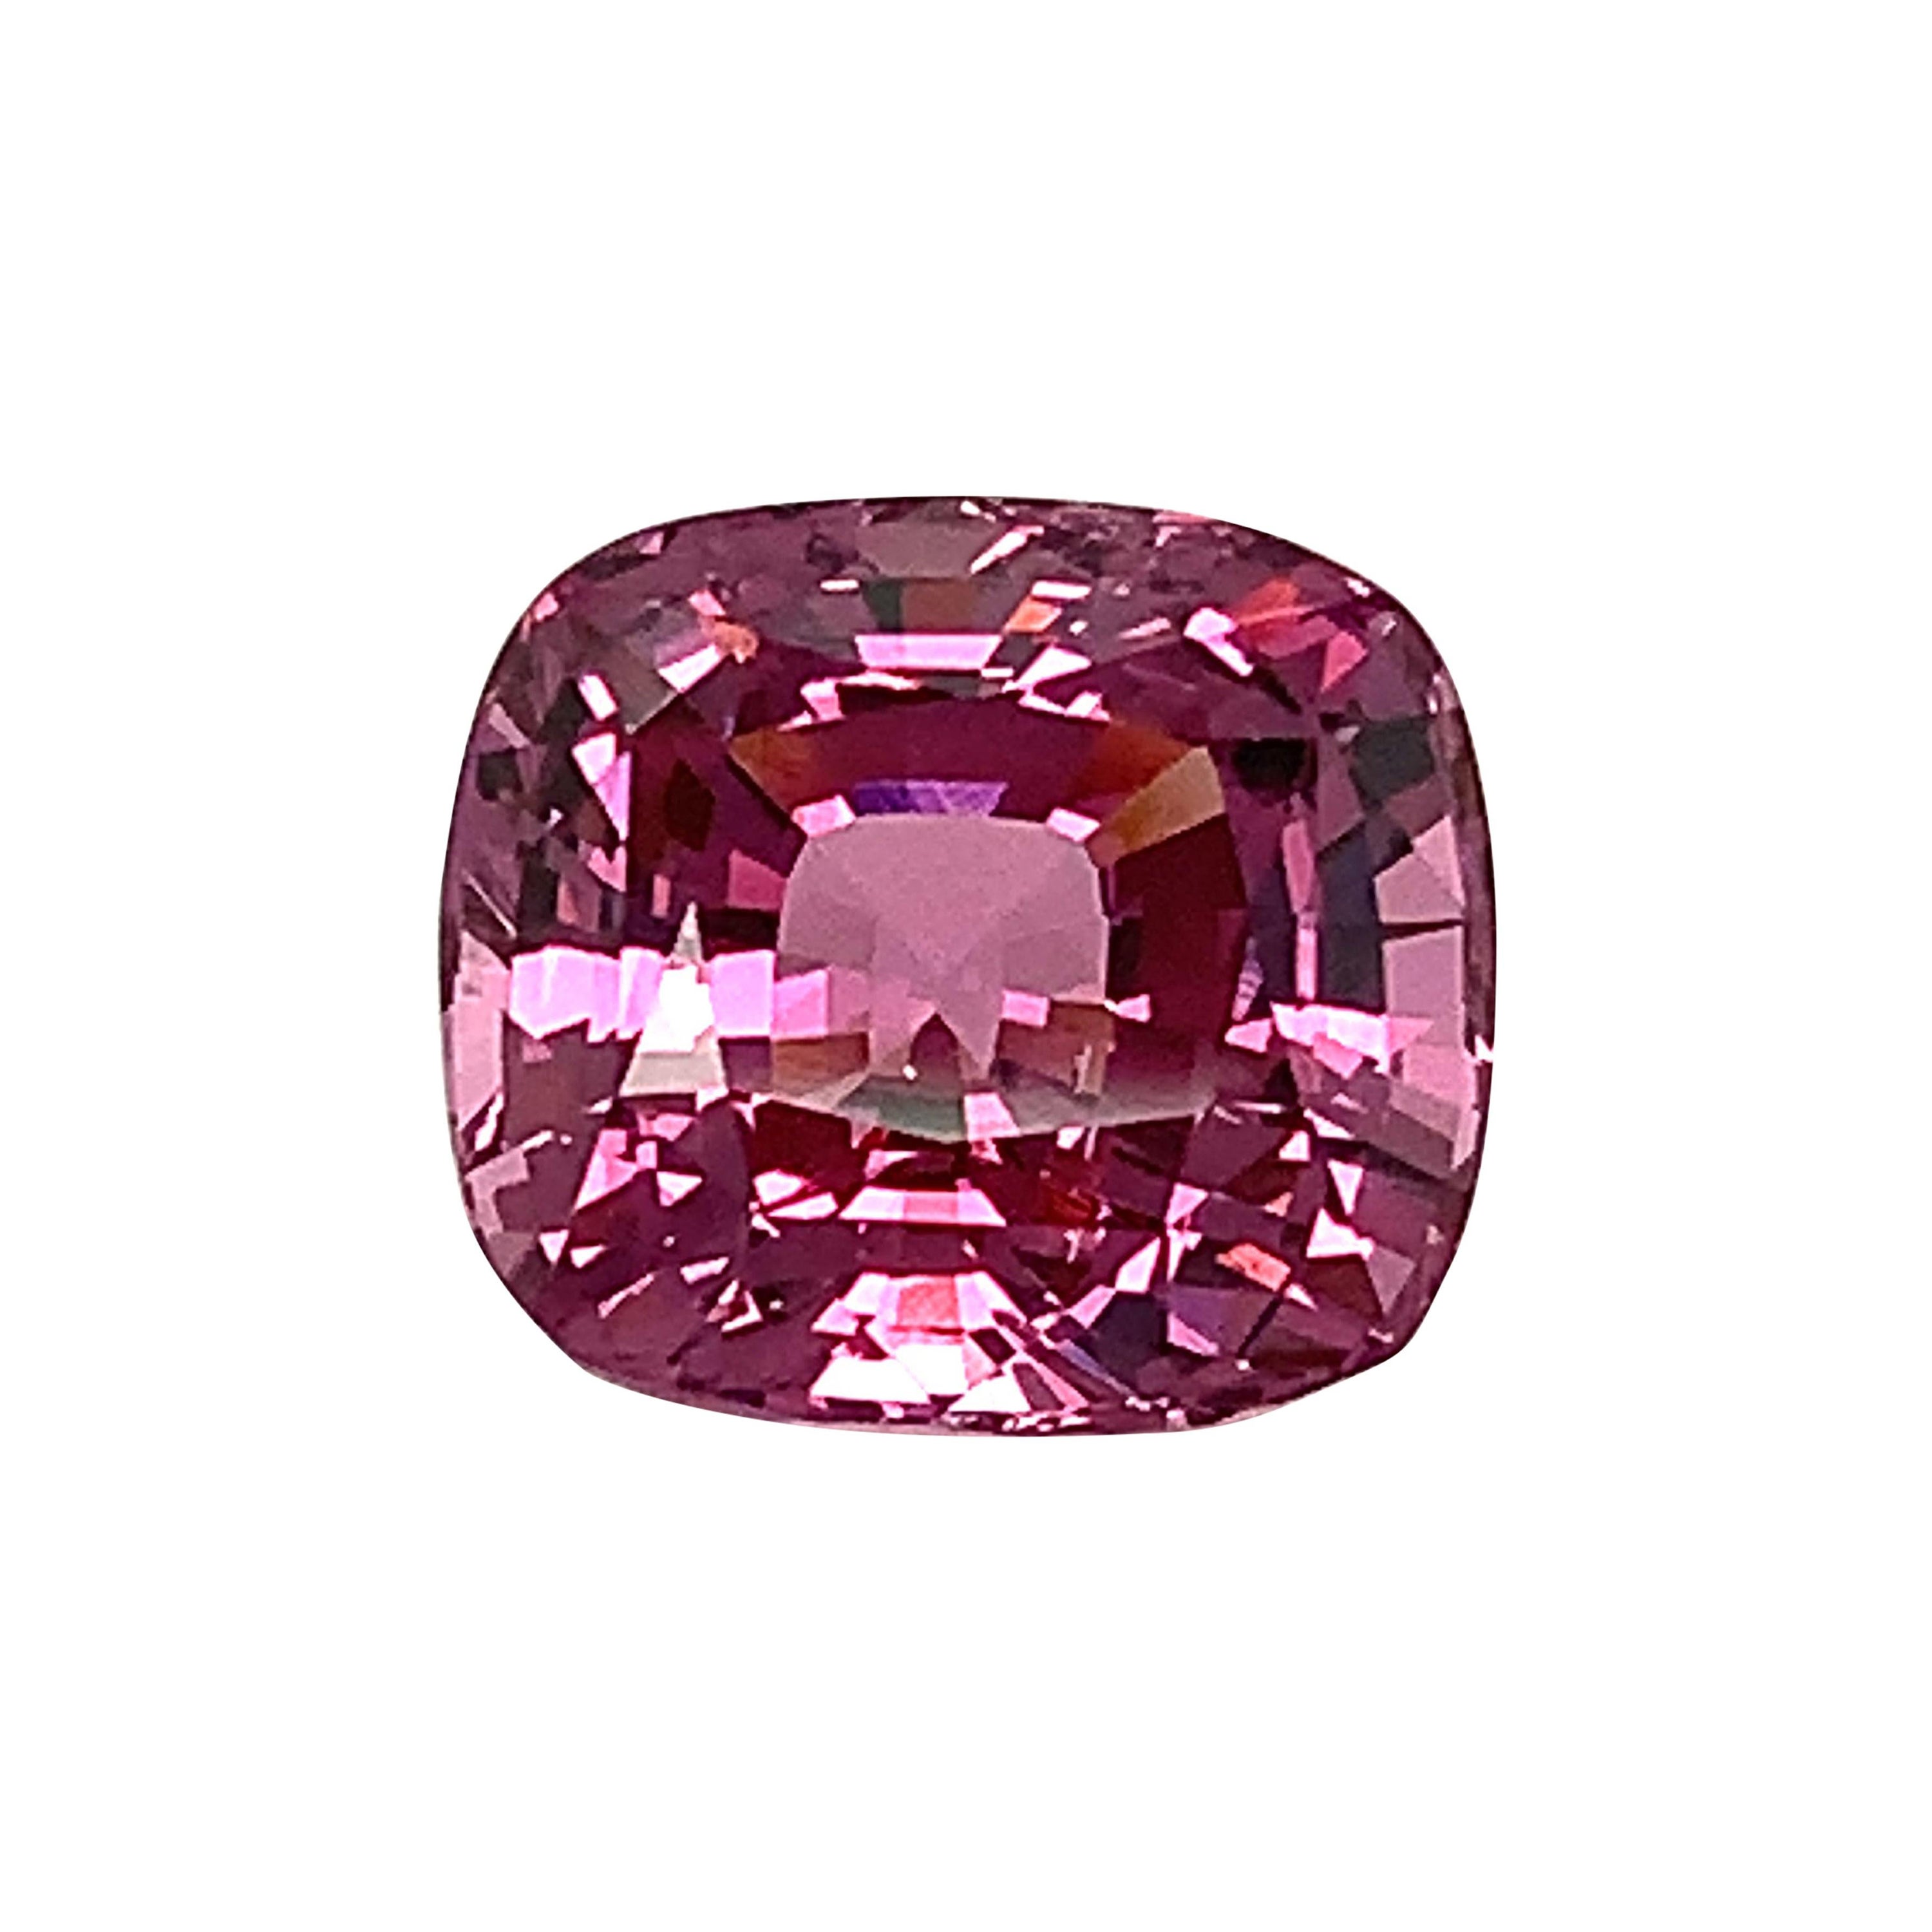 Spinelle rose pourpre non chauffée de 10,21 carats, pierre précieuse en vrac, certifiée par le GIA ...A